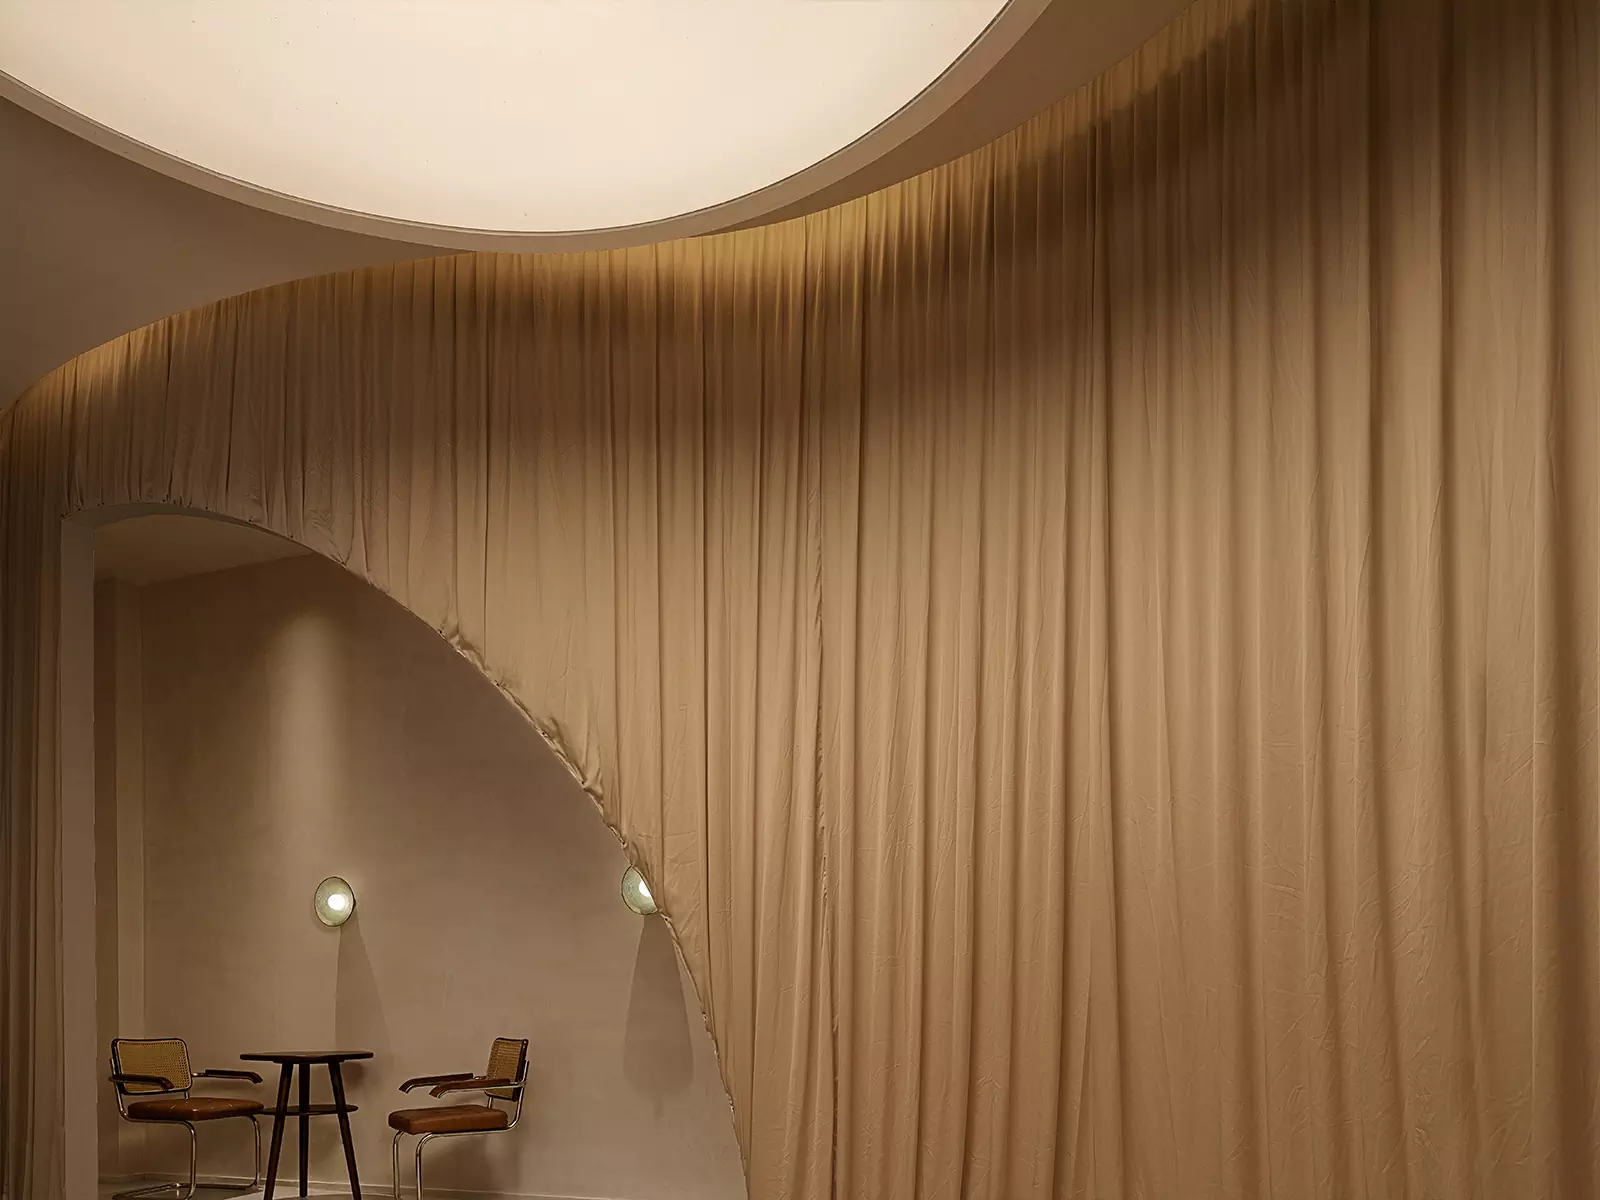 Органические формы и летящий текстиль в медитативном интерьере китайской чайной — проект студии Aurora Design